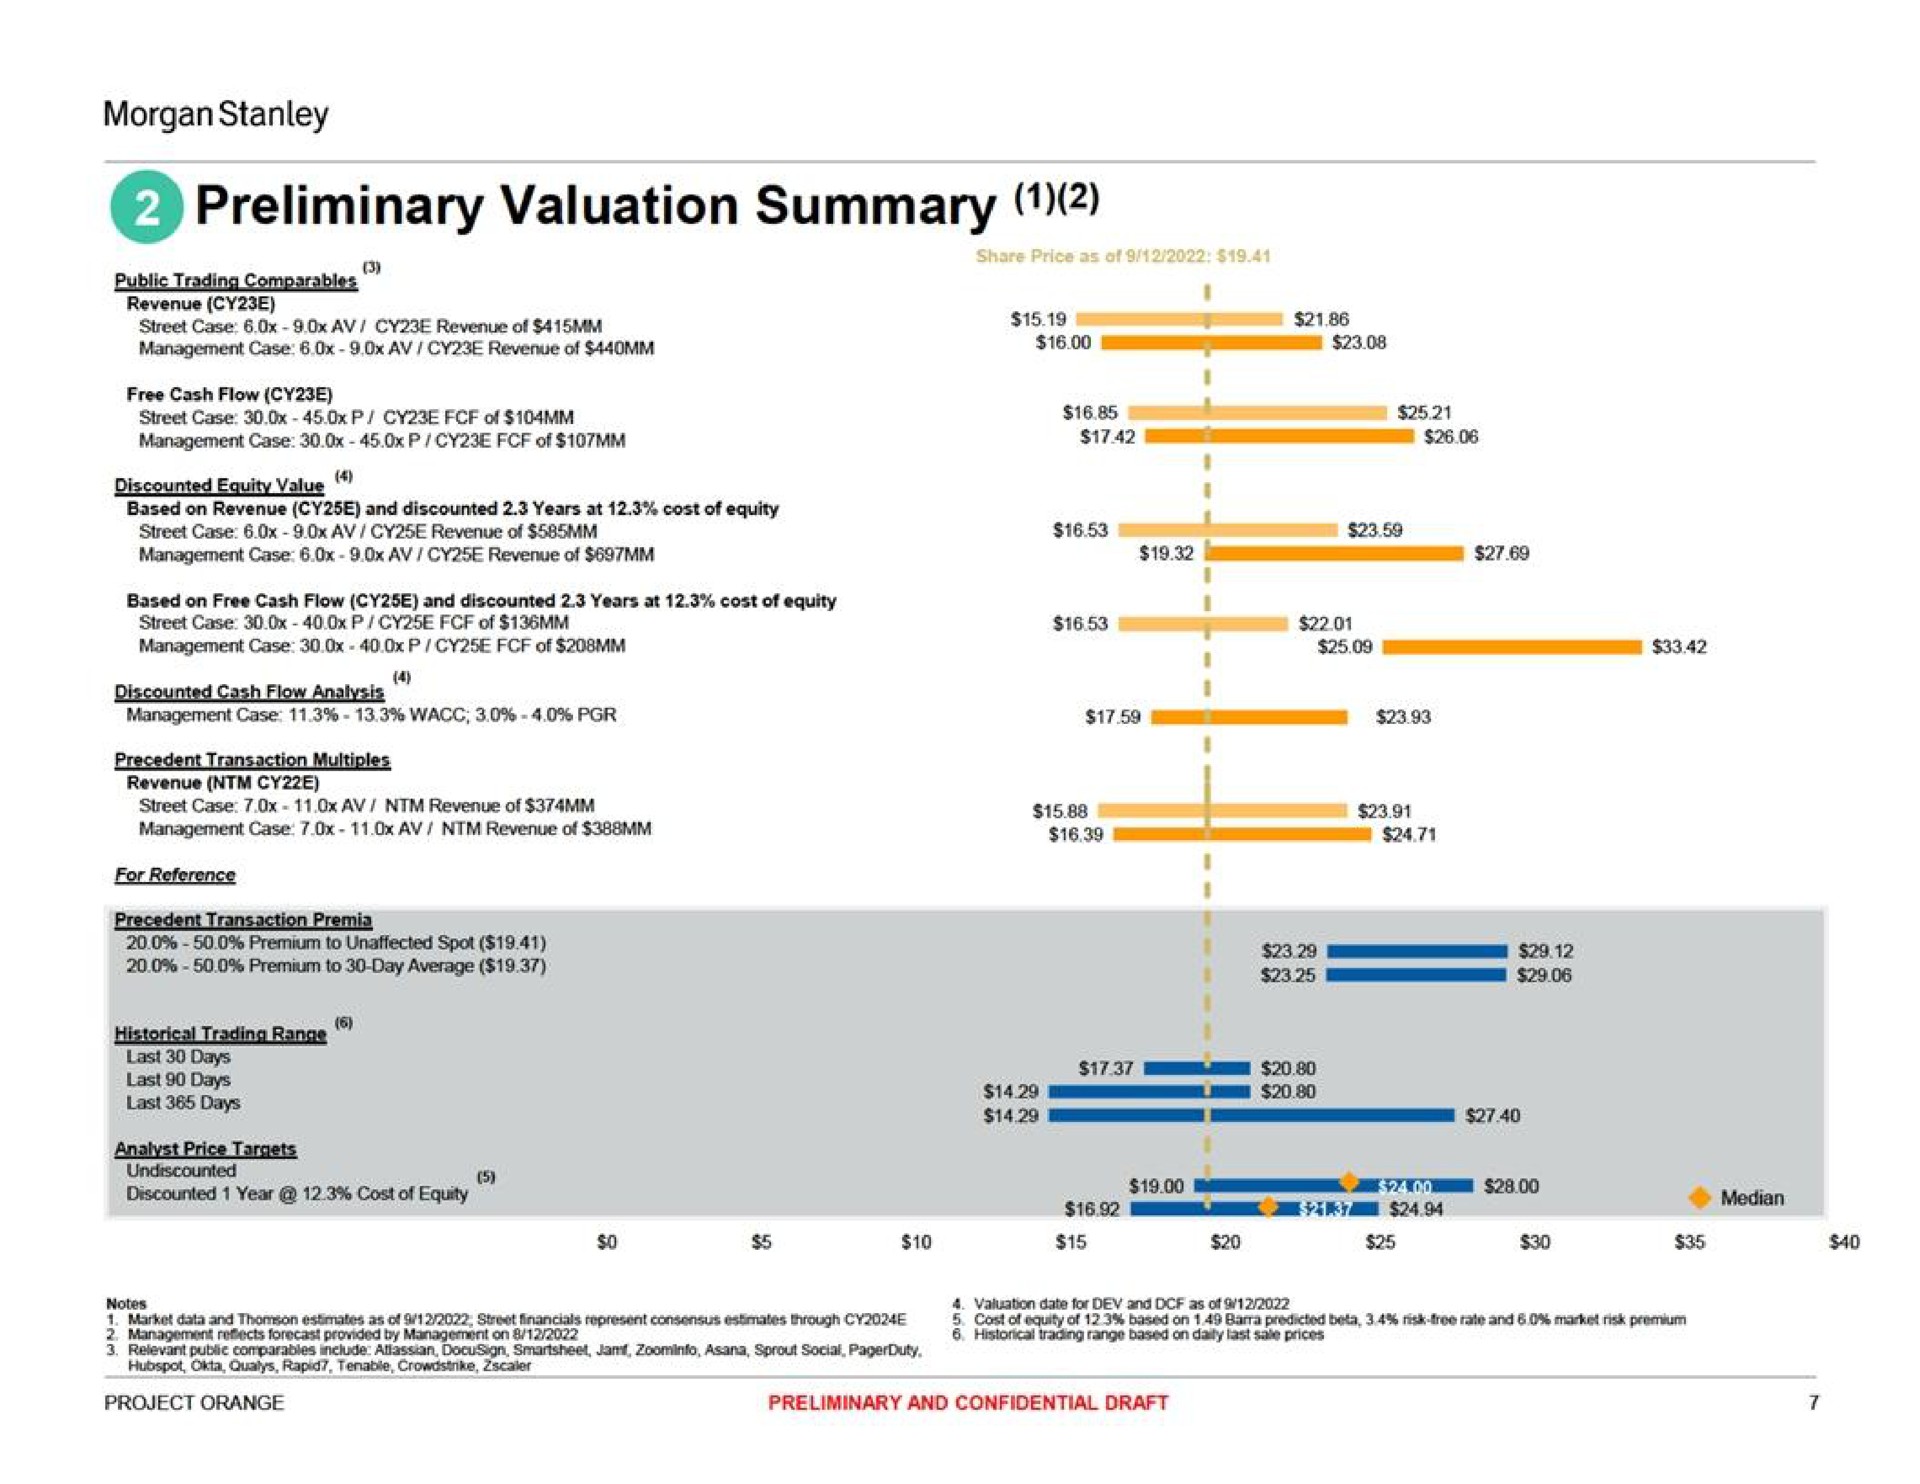 preliminary valuation summary | Morgan Stanley